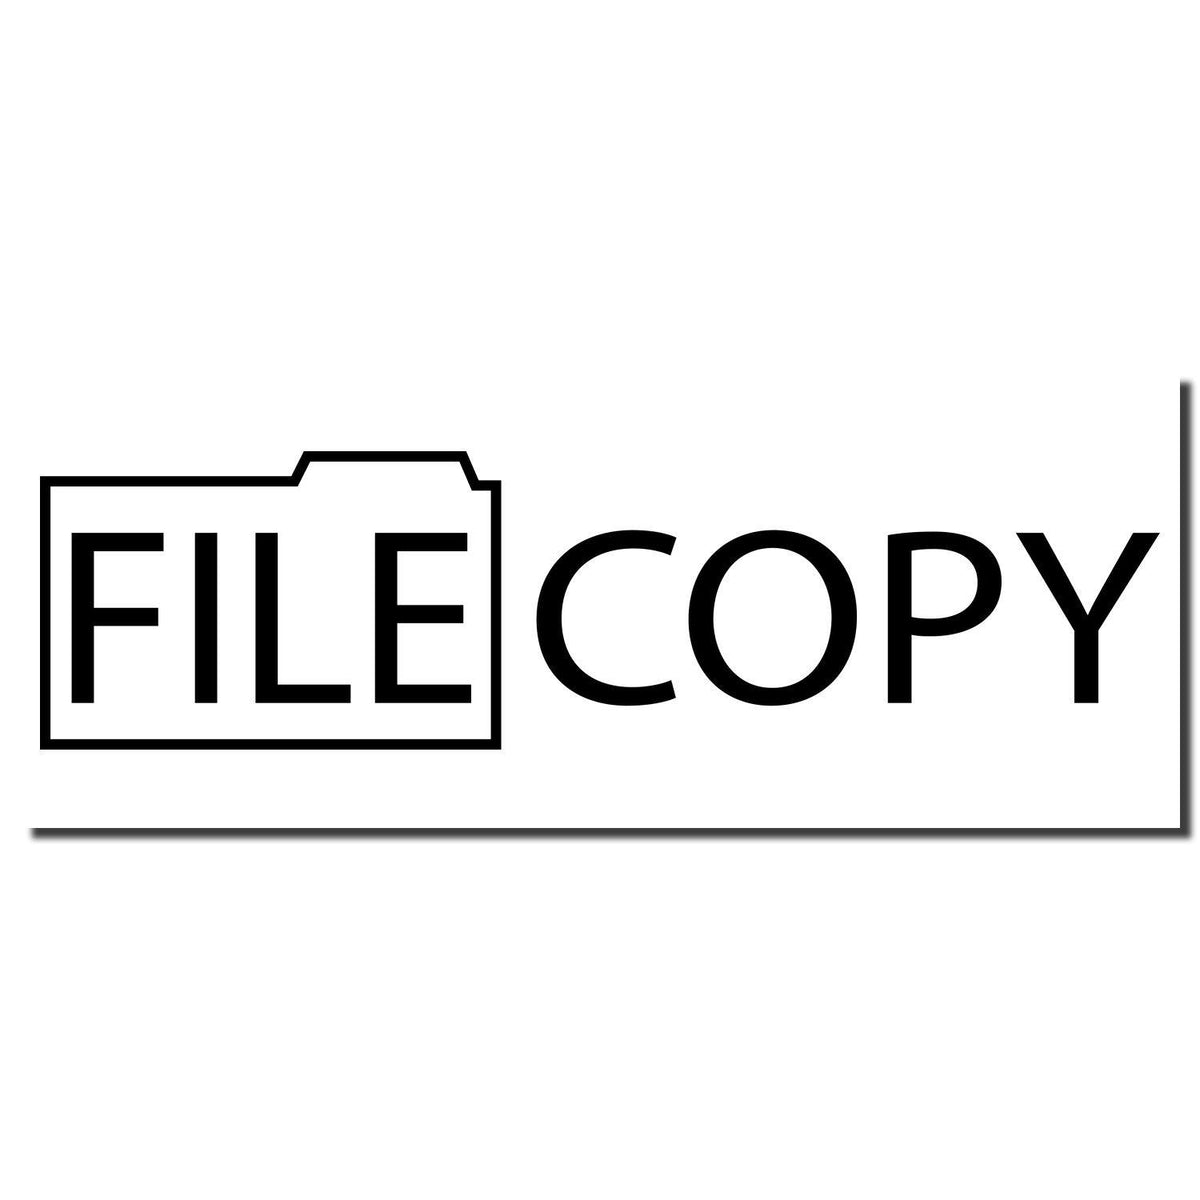 Enlarged Imprint File Copy with Folder Rubber Stamp Sample